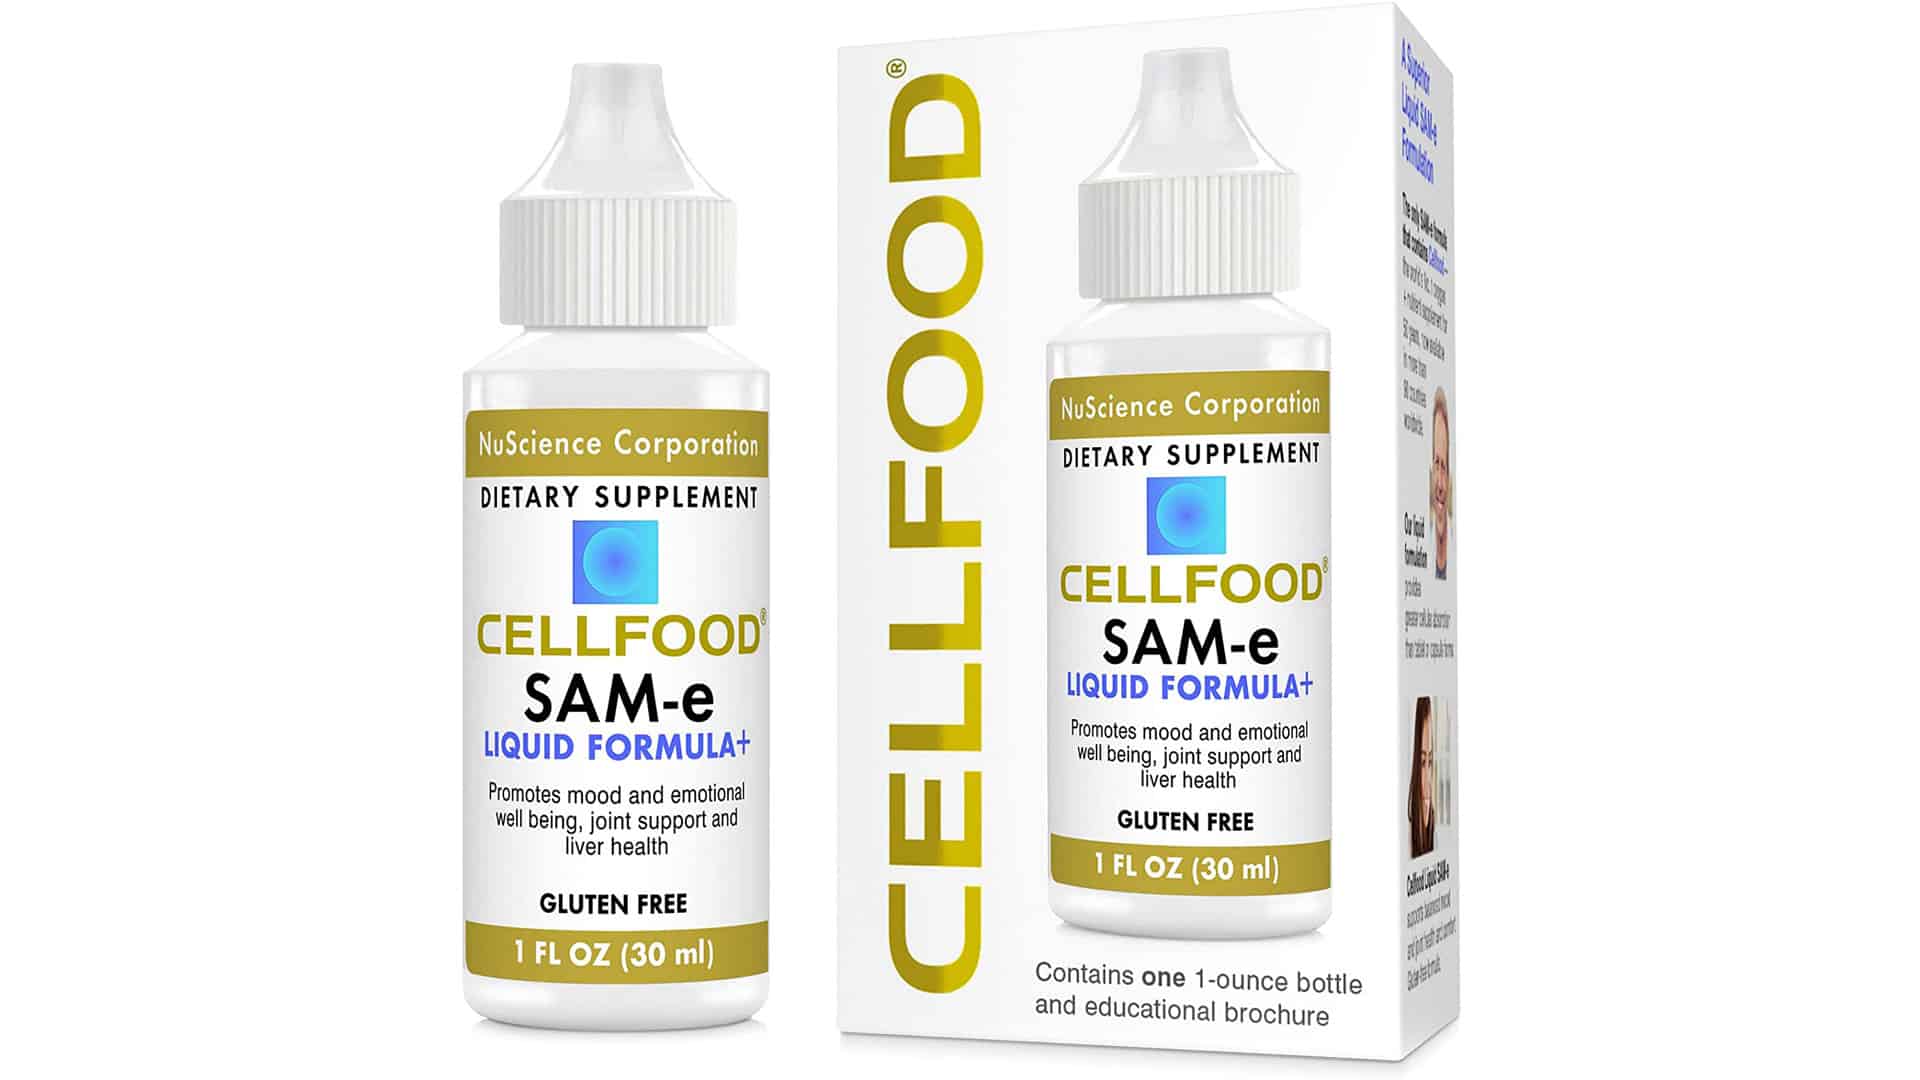 CELLFOOD SAM-e Liquid Formula